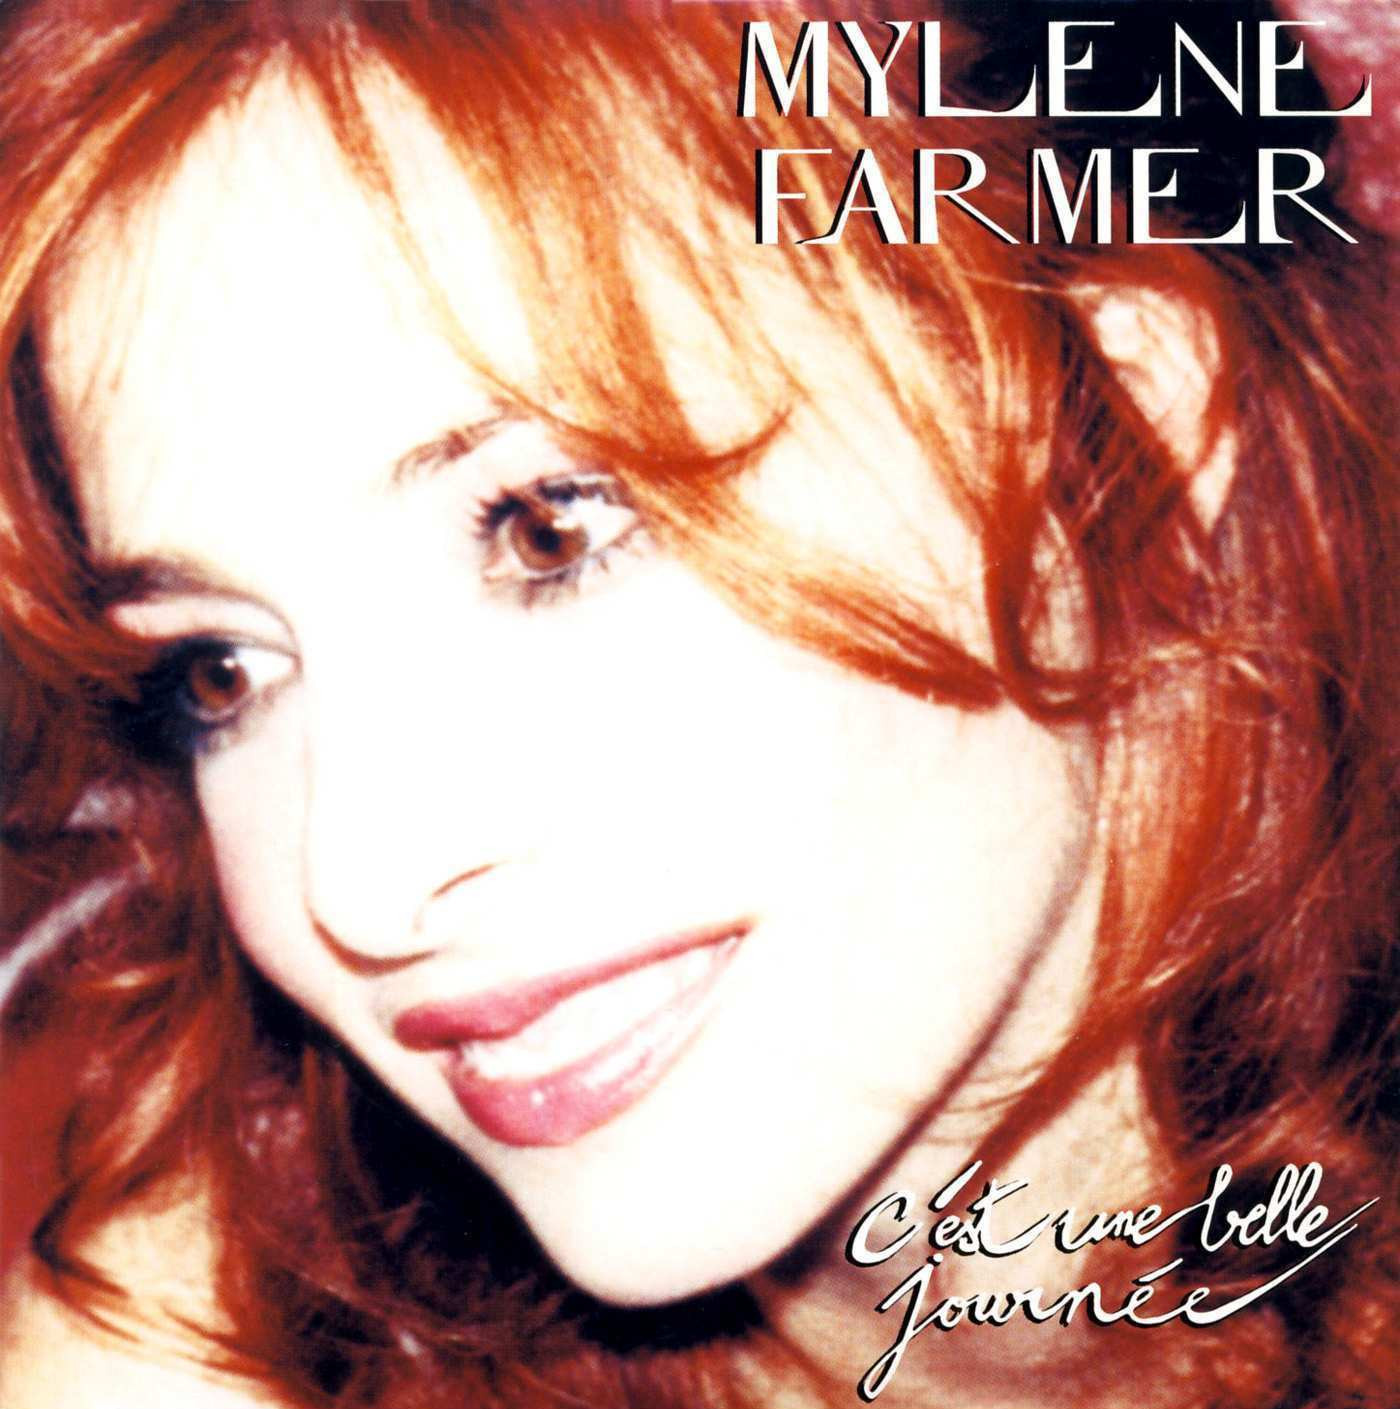 Mylène Farmer - Pochette single C'est une belle journée